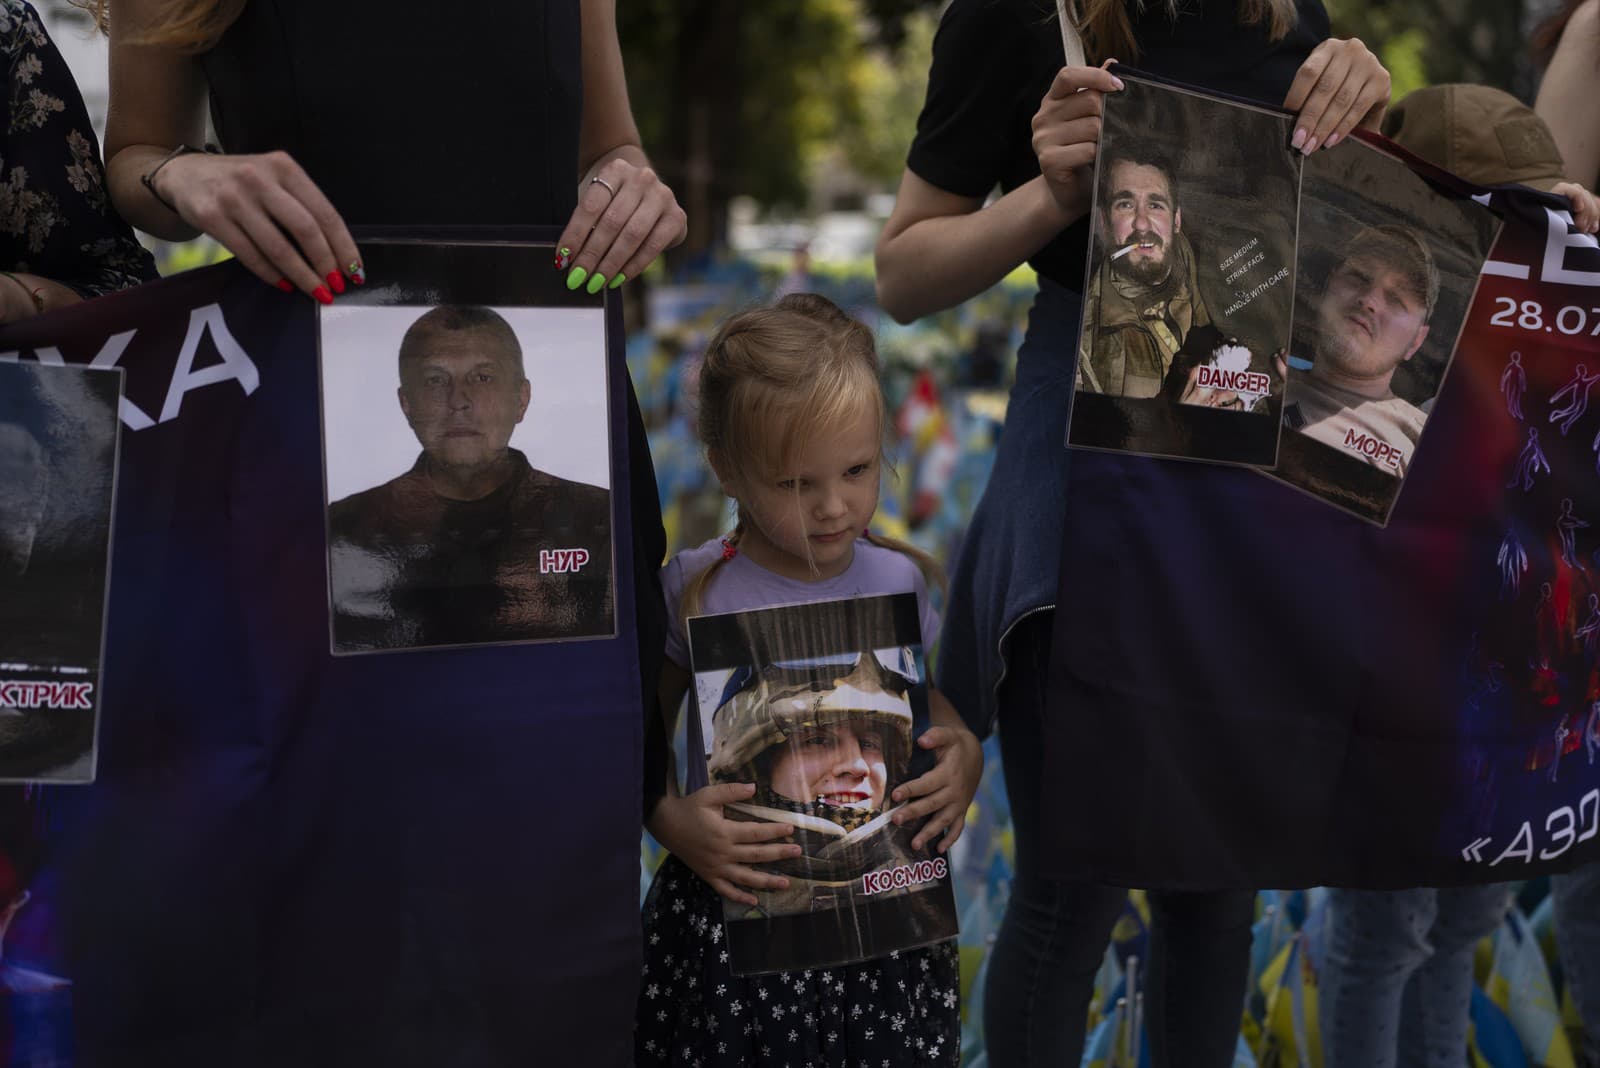 Rodinní príslušníci a priaznivci sa zišli pri príležitosti prvého výročia útoku na budovu väznice v Olenivke na východe Ukrajiny, pri ktorom zahynuli desiatky ukrajinských vojenských väzňov. 